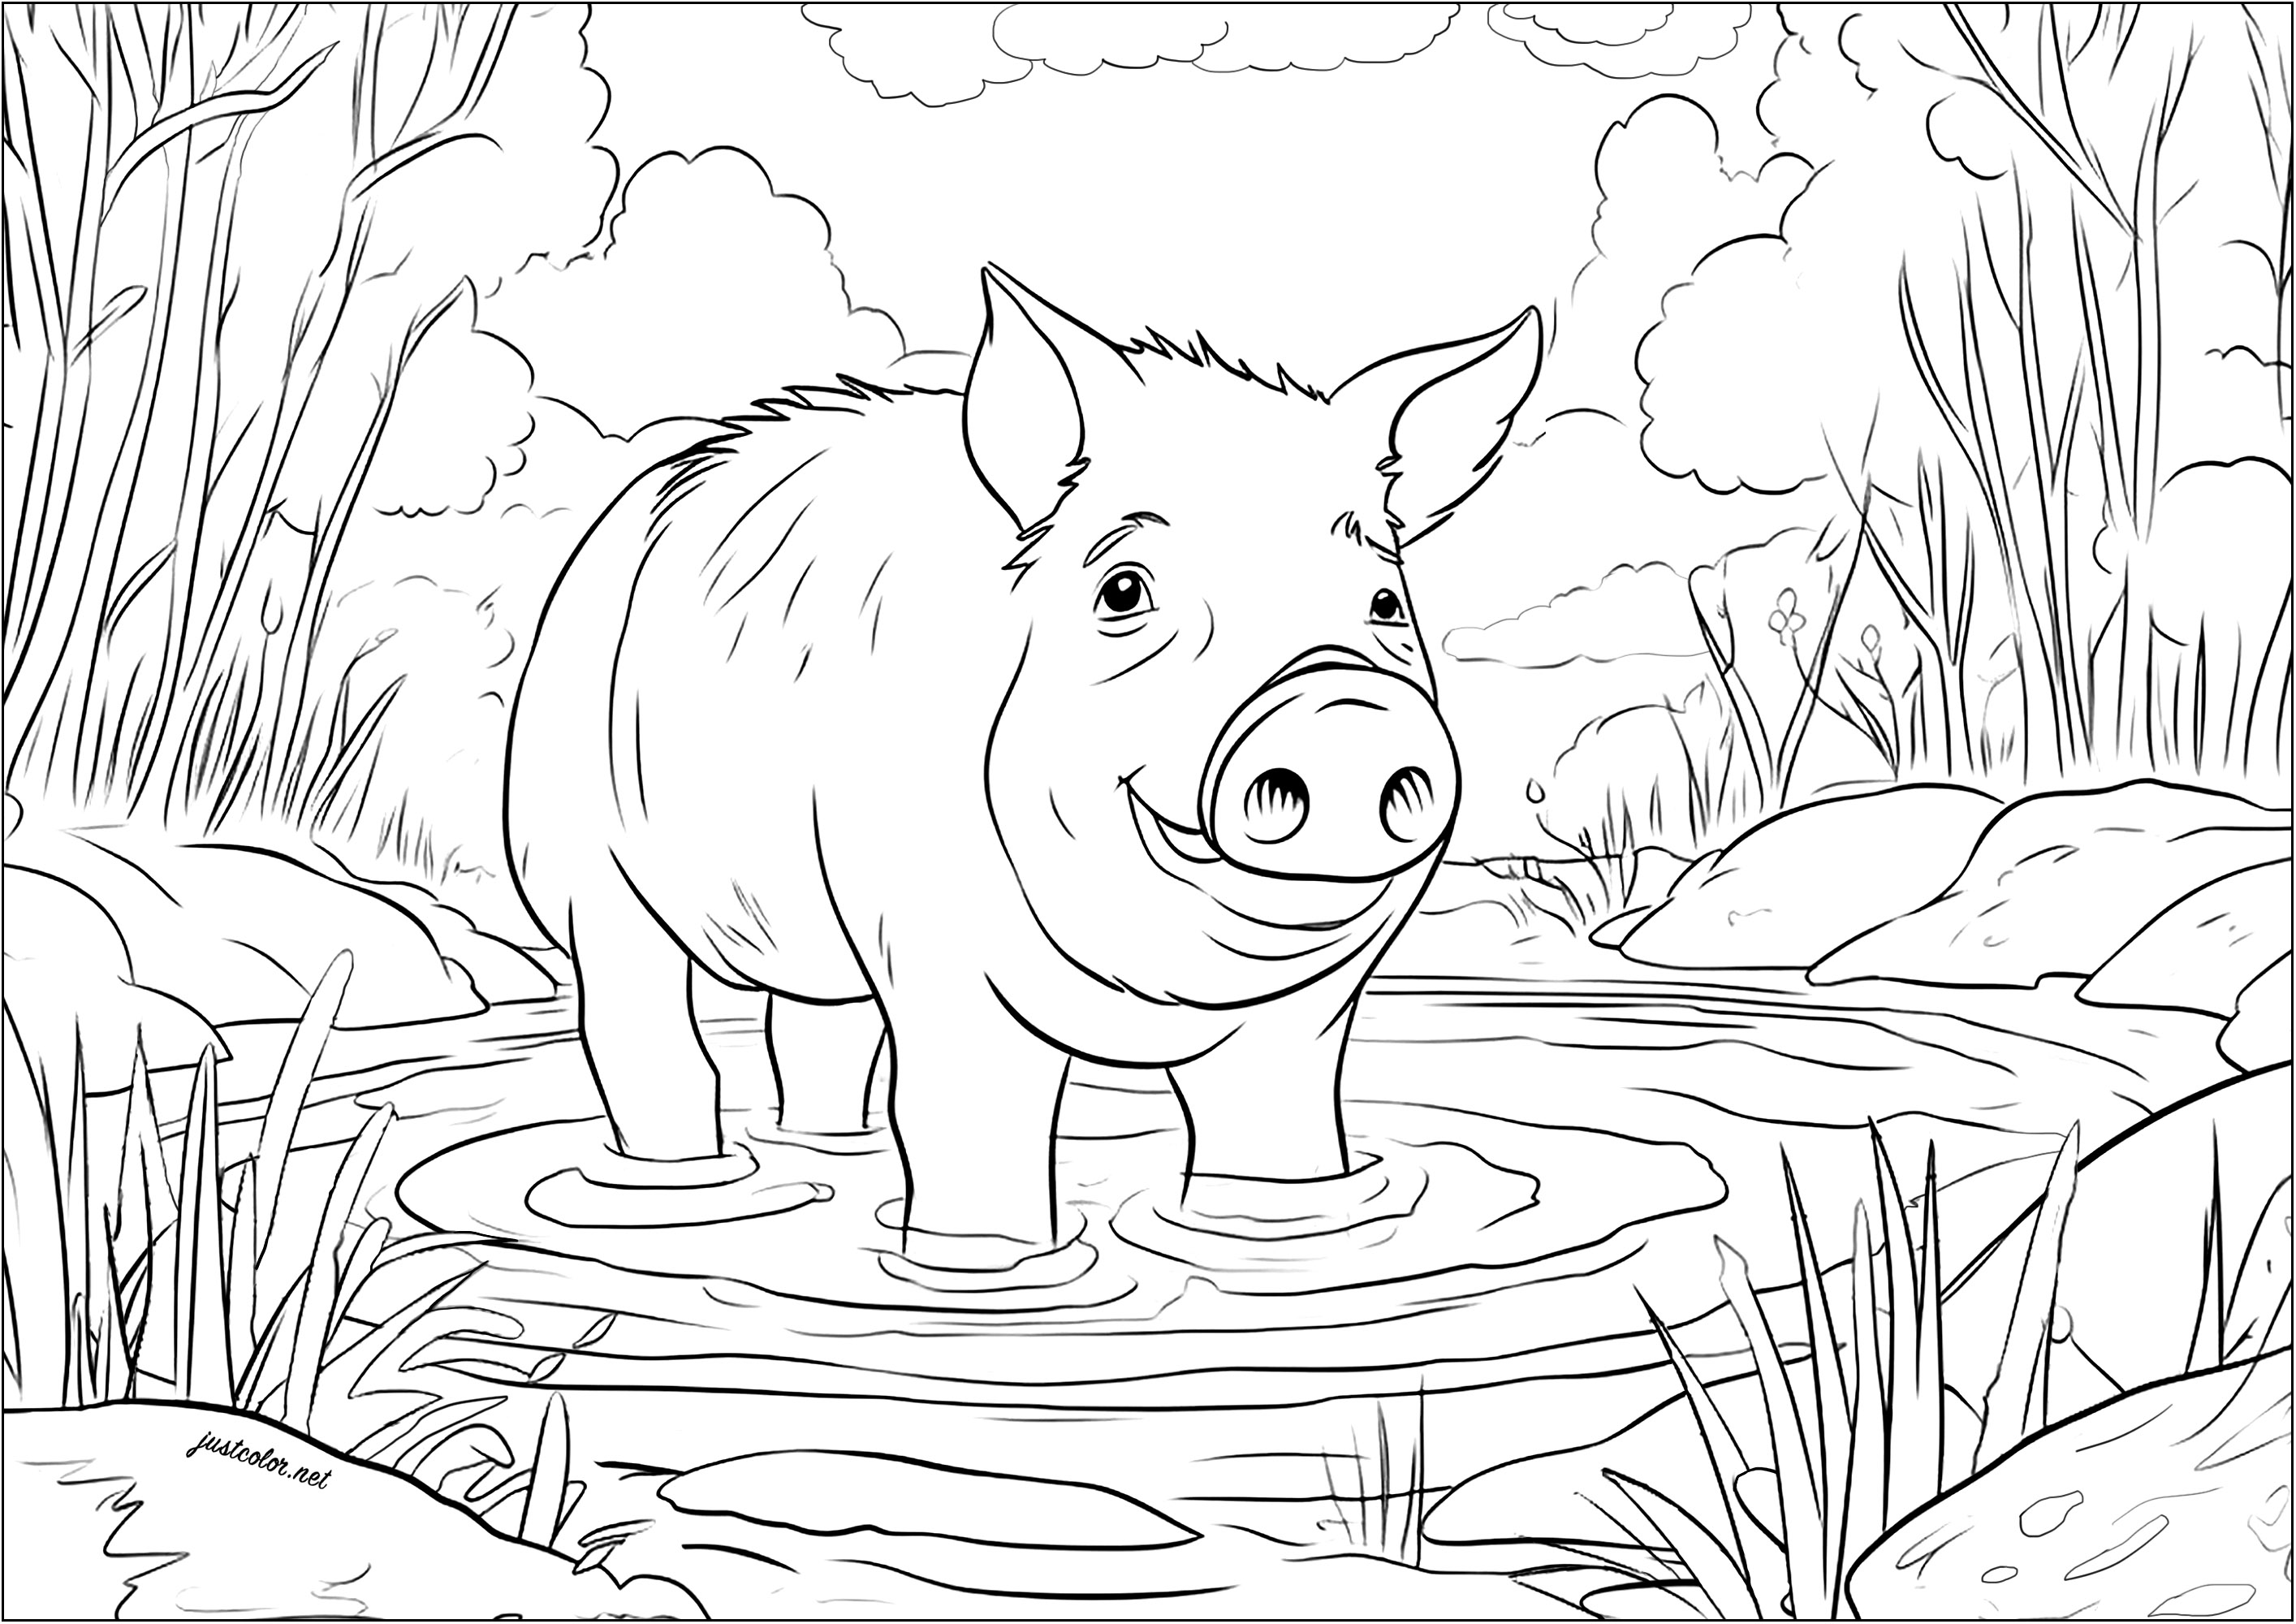 Schwein in einer Schlammpfütze. Färbe dieses niedliche Schwein, das sich freut, seine Pfoten einzutauchen und sich in diesem schlammigen Pool abzukühlen